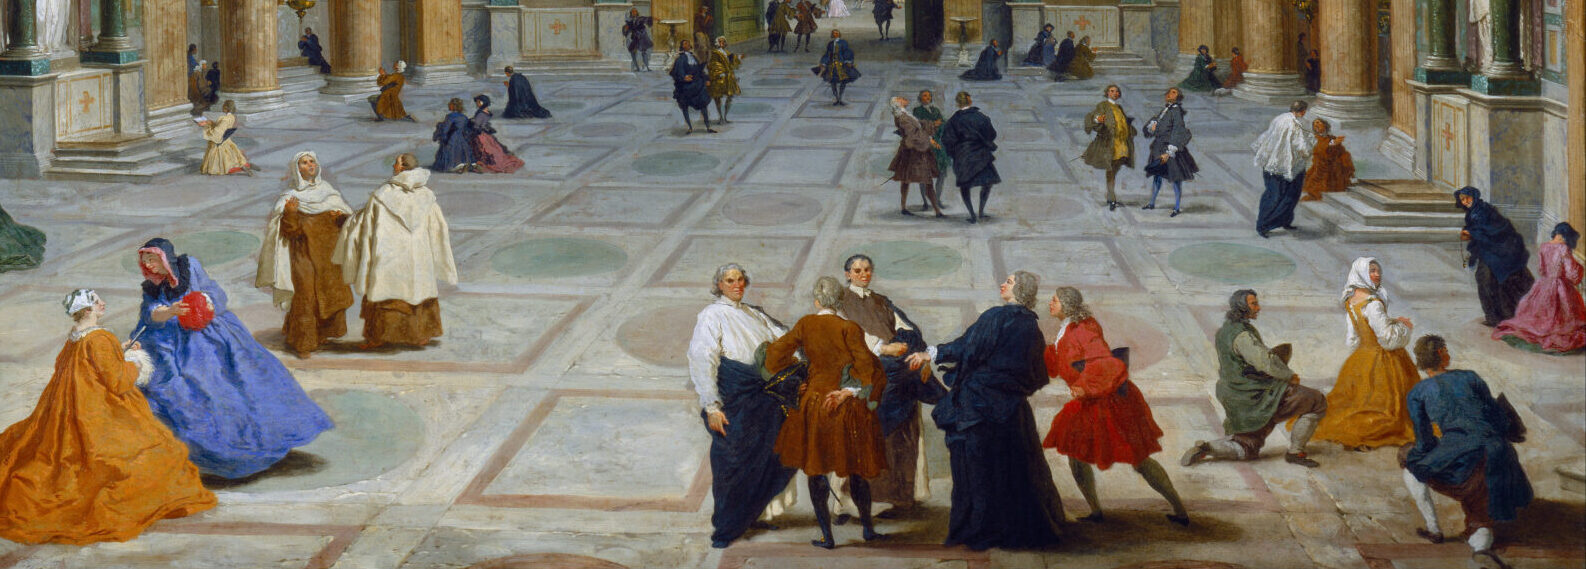 Dettaglio inferiore del dipinto "Interior of the Pantheon of Rome" di Giovanni Paolo Panini